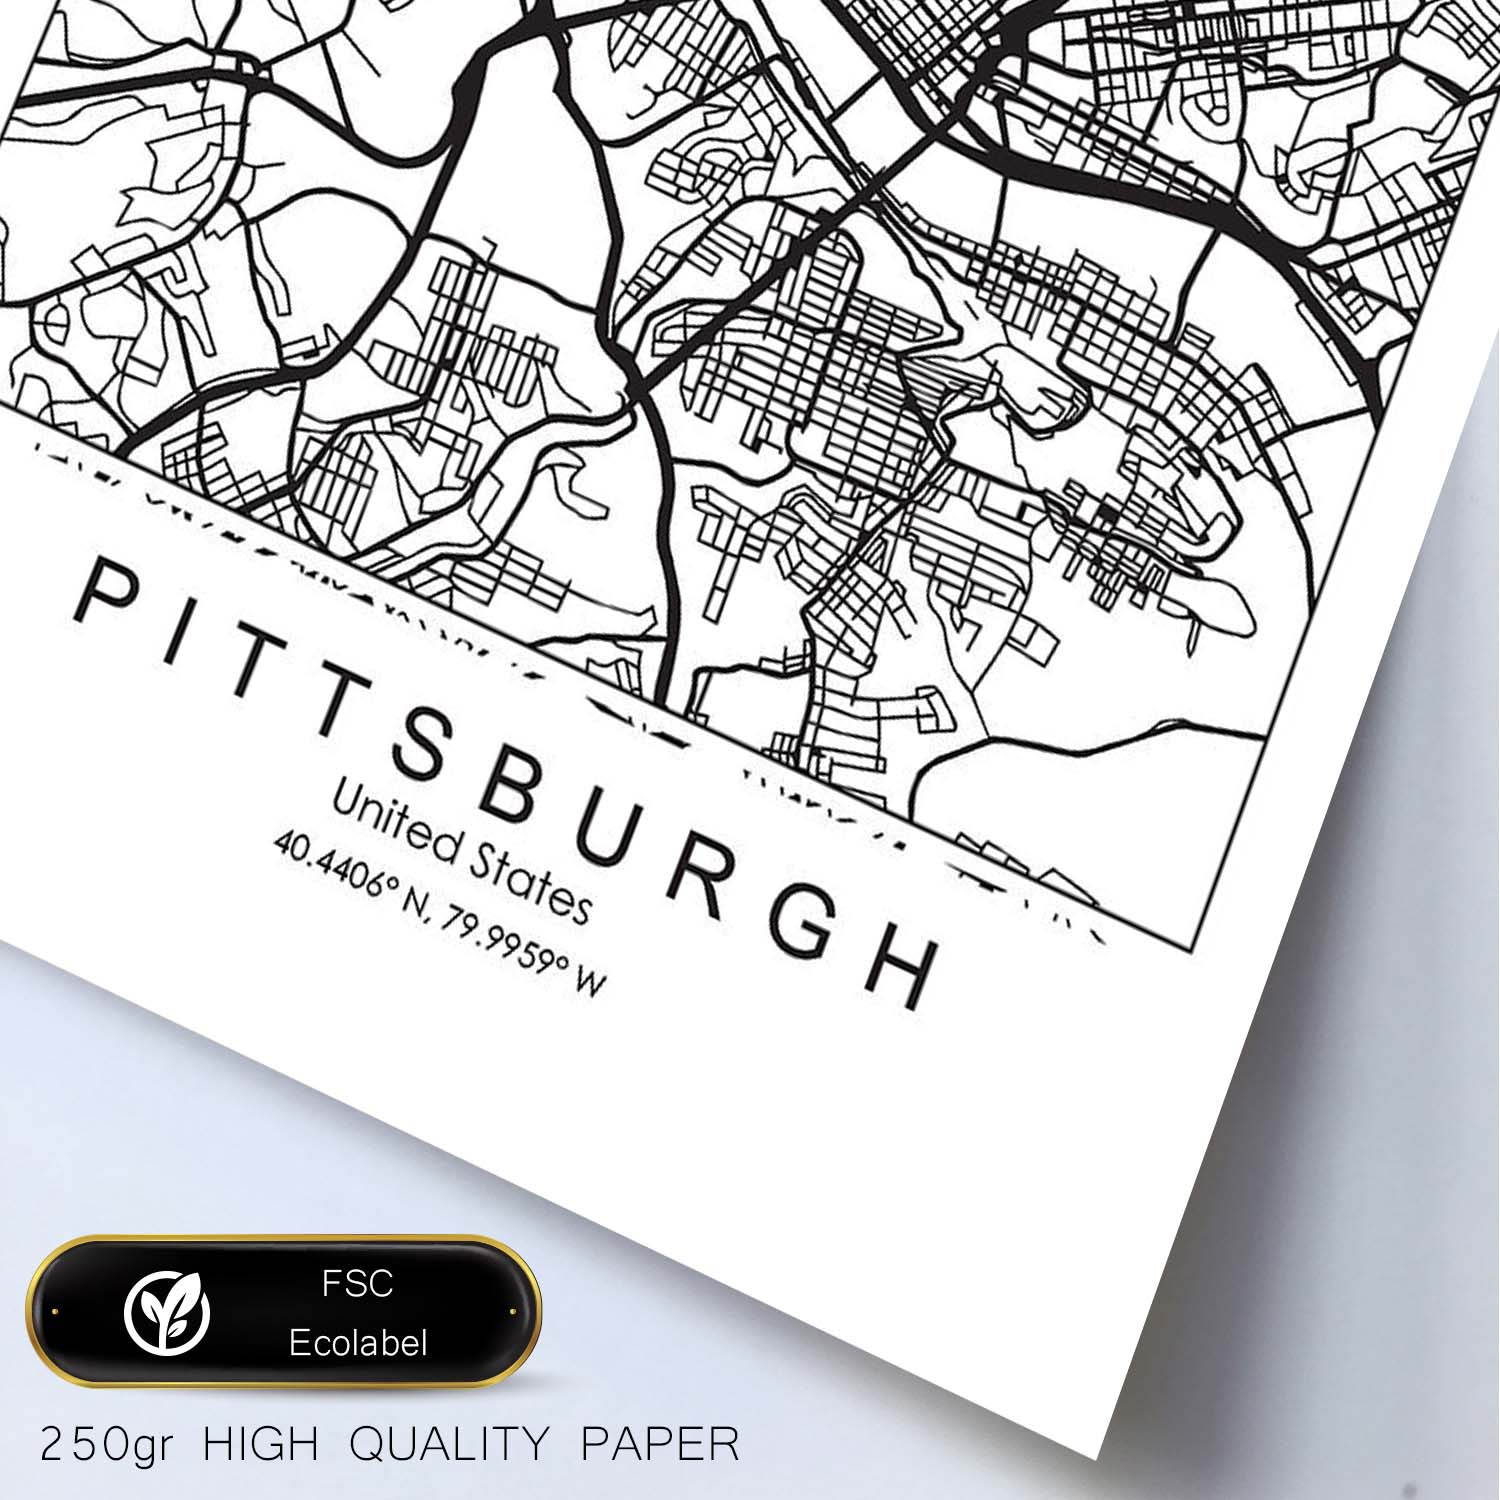 Poster con mapa de Pittsburgh. Lámina de Estados Unidos, con imágenes de mapas y carreteras-Artwork-Nacnic-Nacnic Estudio SL